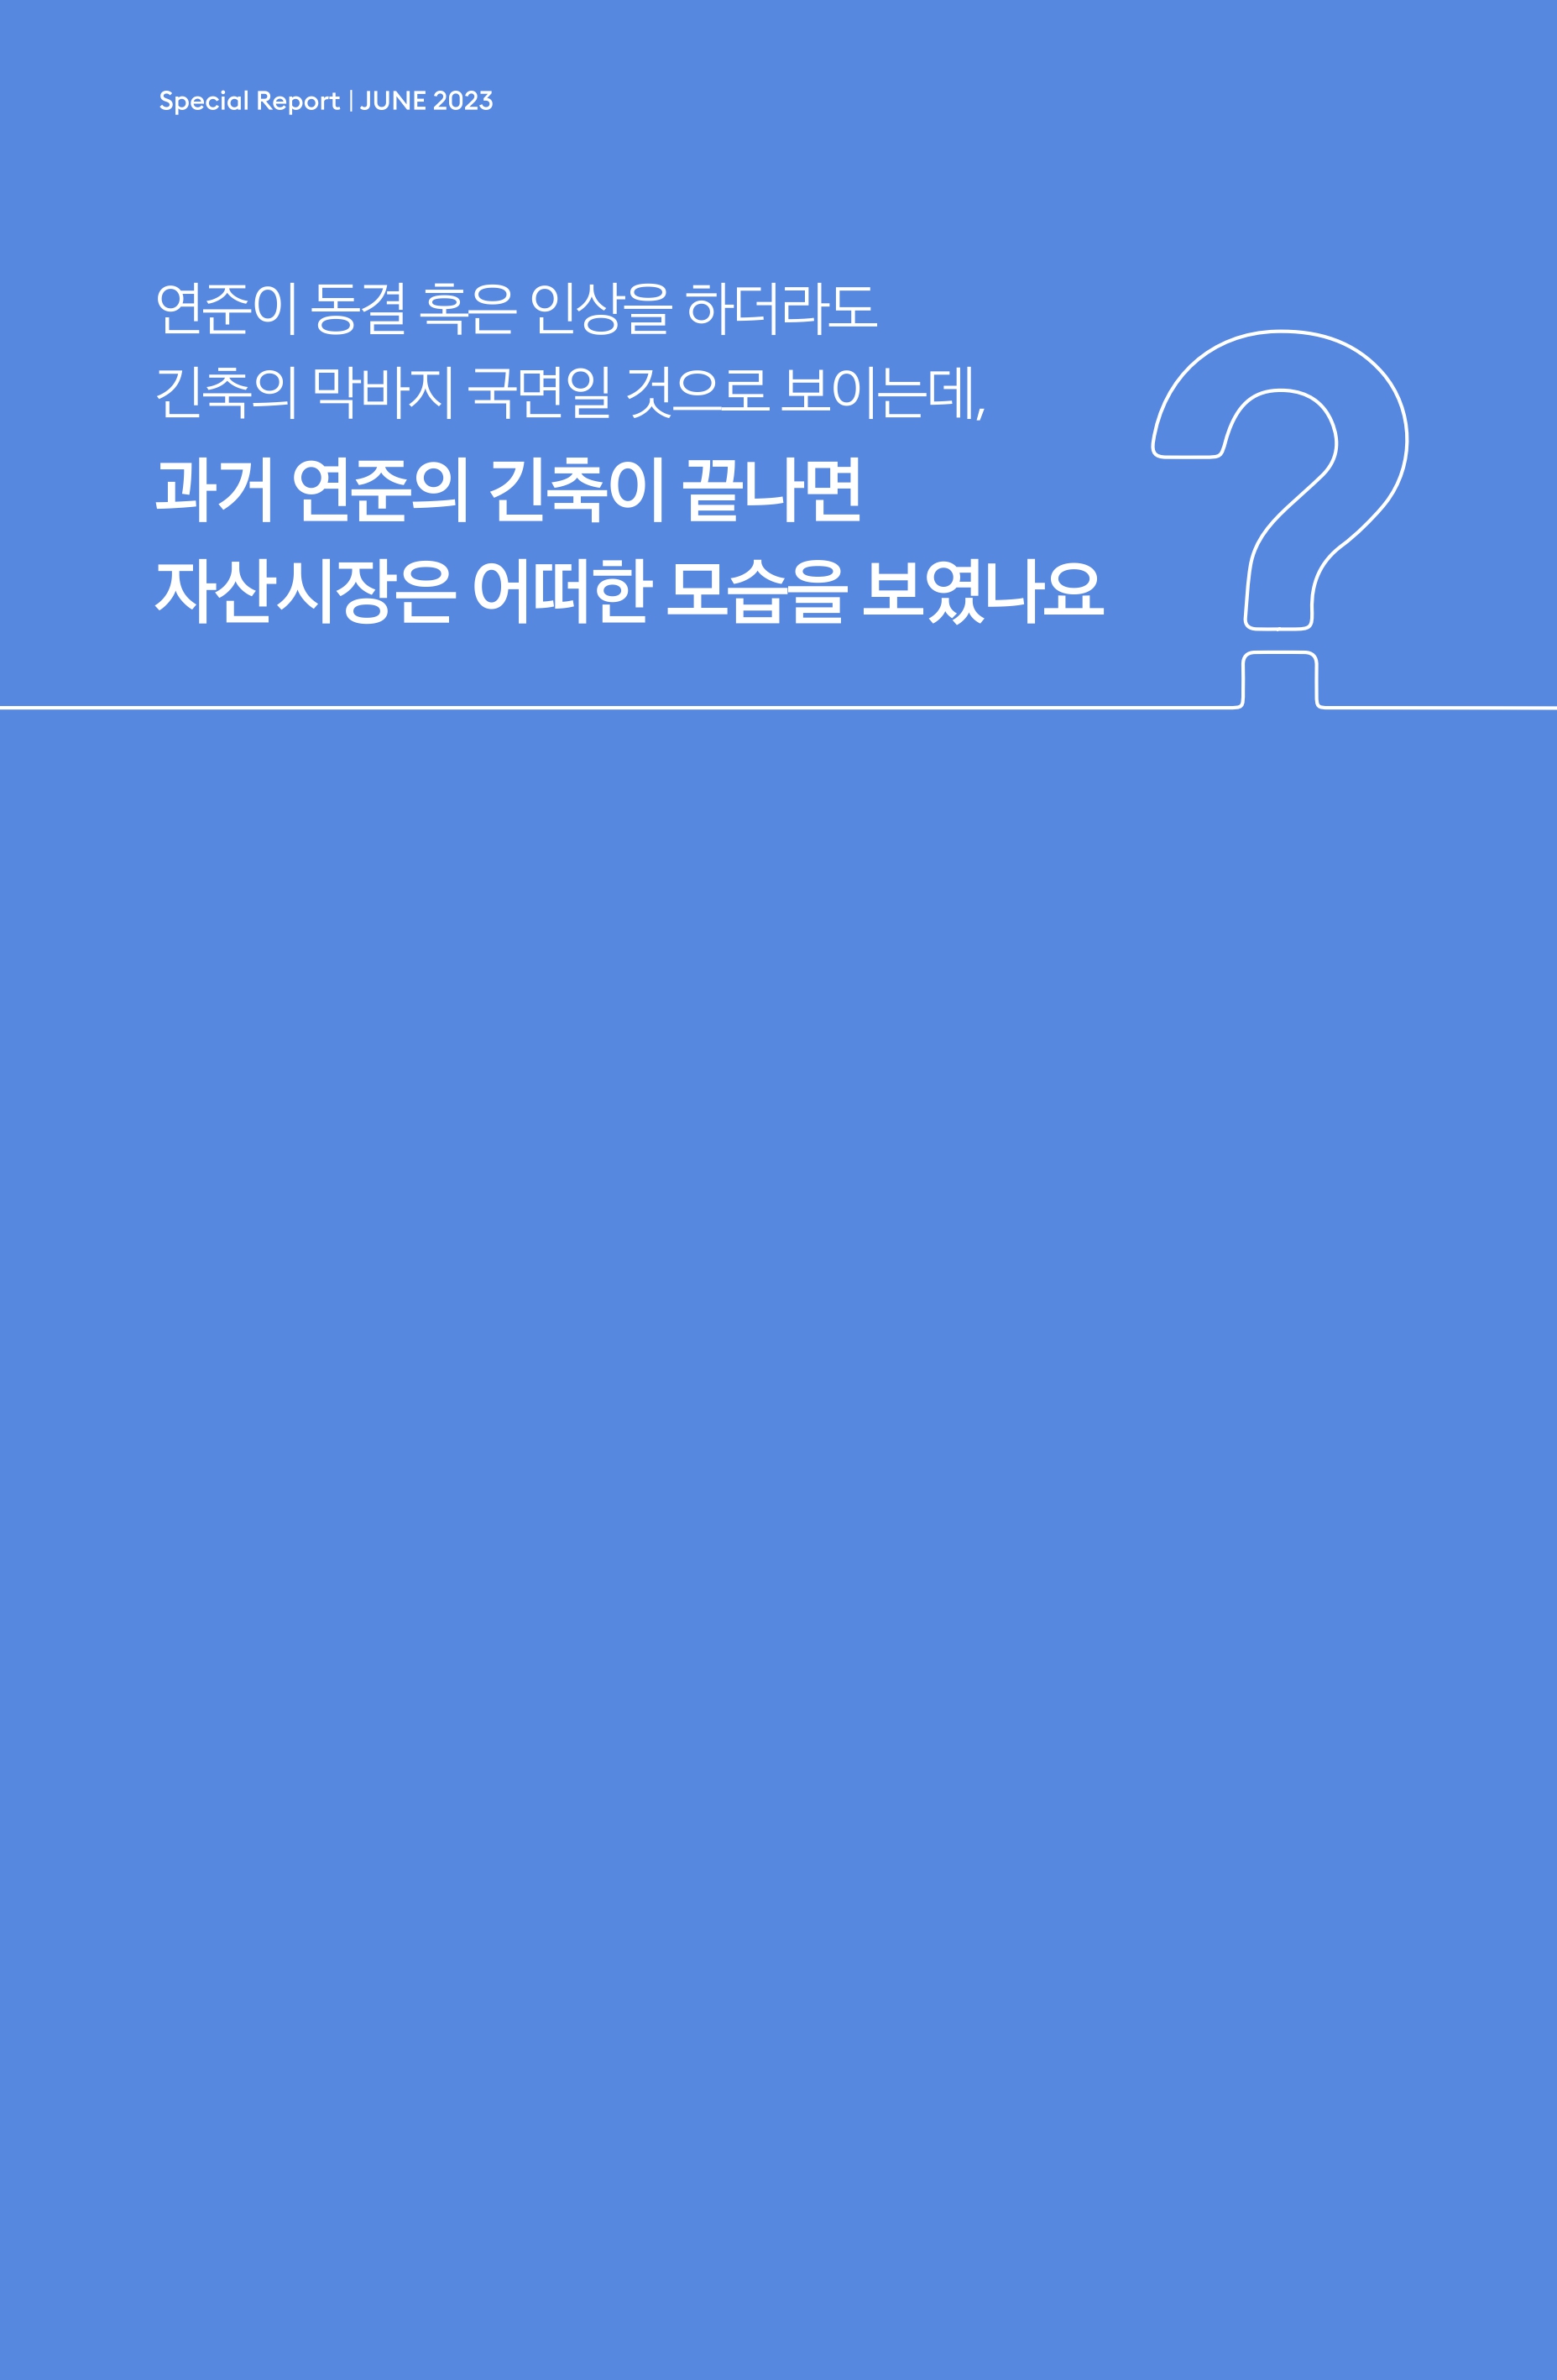 Samsung Global Market Outlook(낱장)_202306_page-0005.jpg